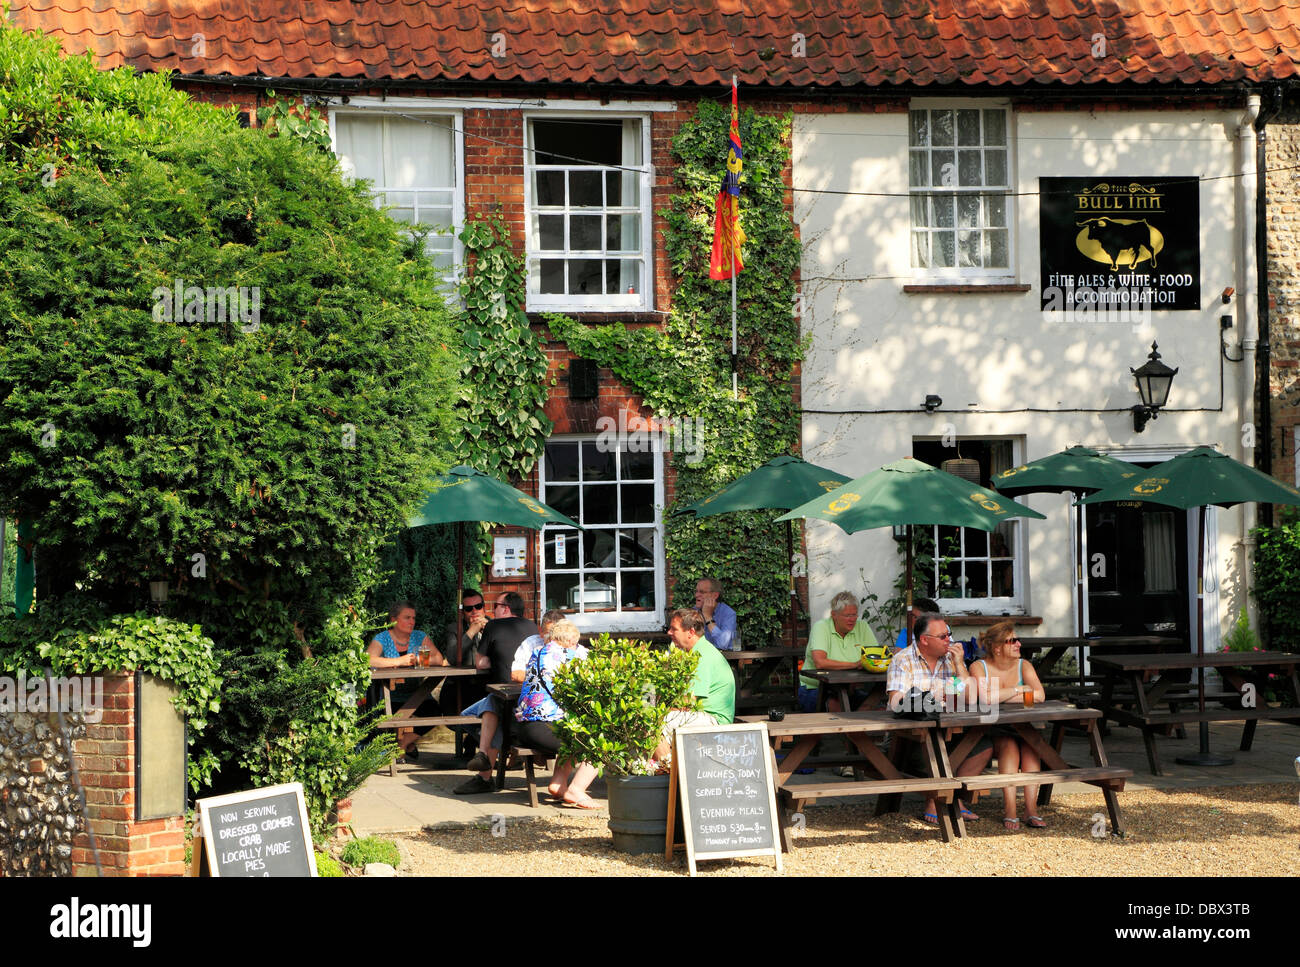 Walsingham, The Bull Inn, le jardin et la pub, les personnes qui consomment de l'alcool, Norfolk, Angleterre, Royaume-Uni, les pubs Anglais inns Banque D'Images